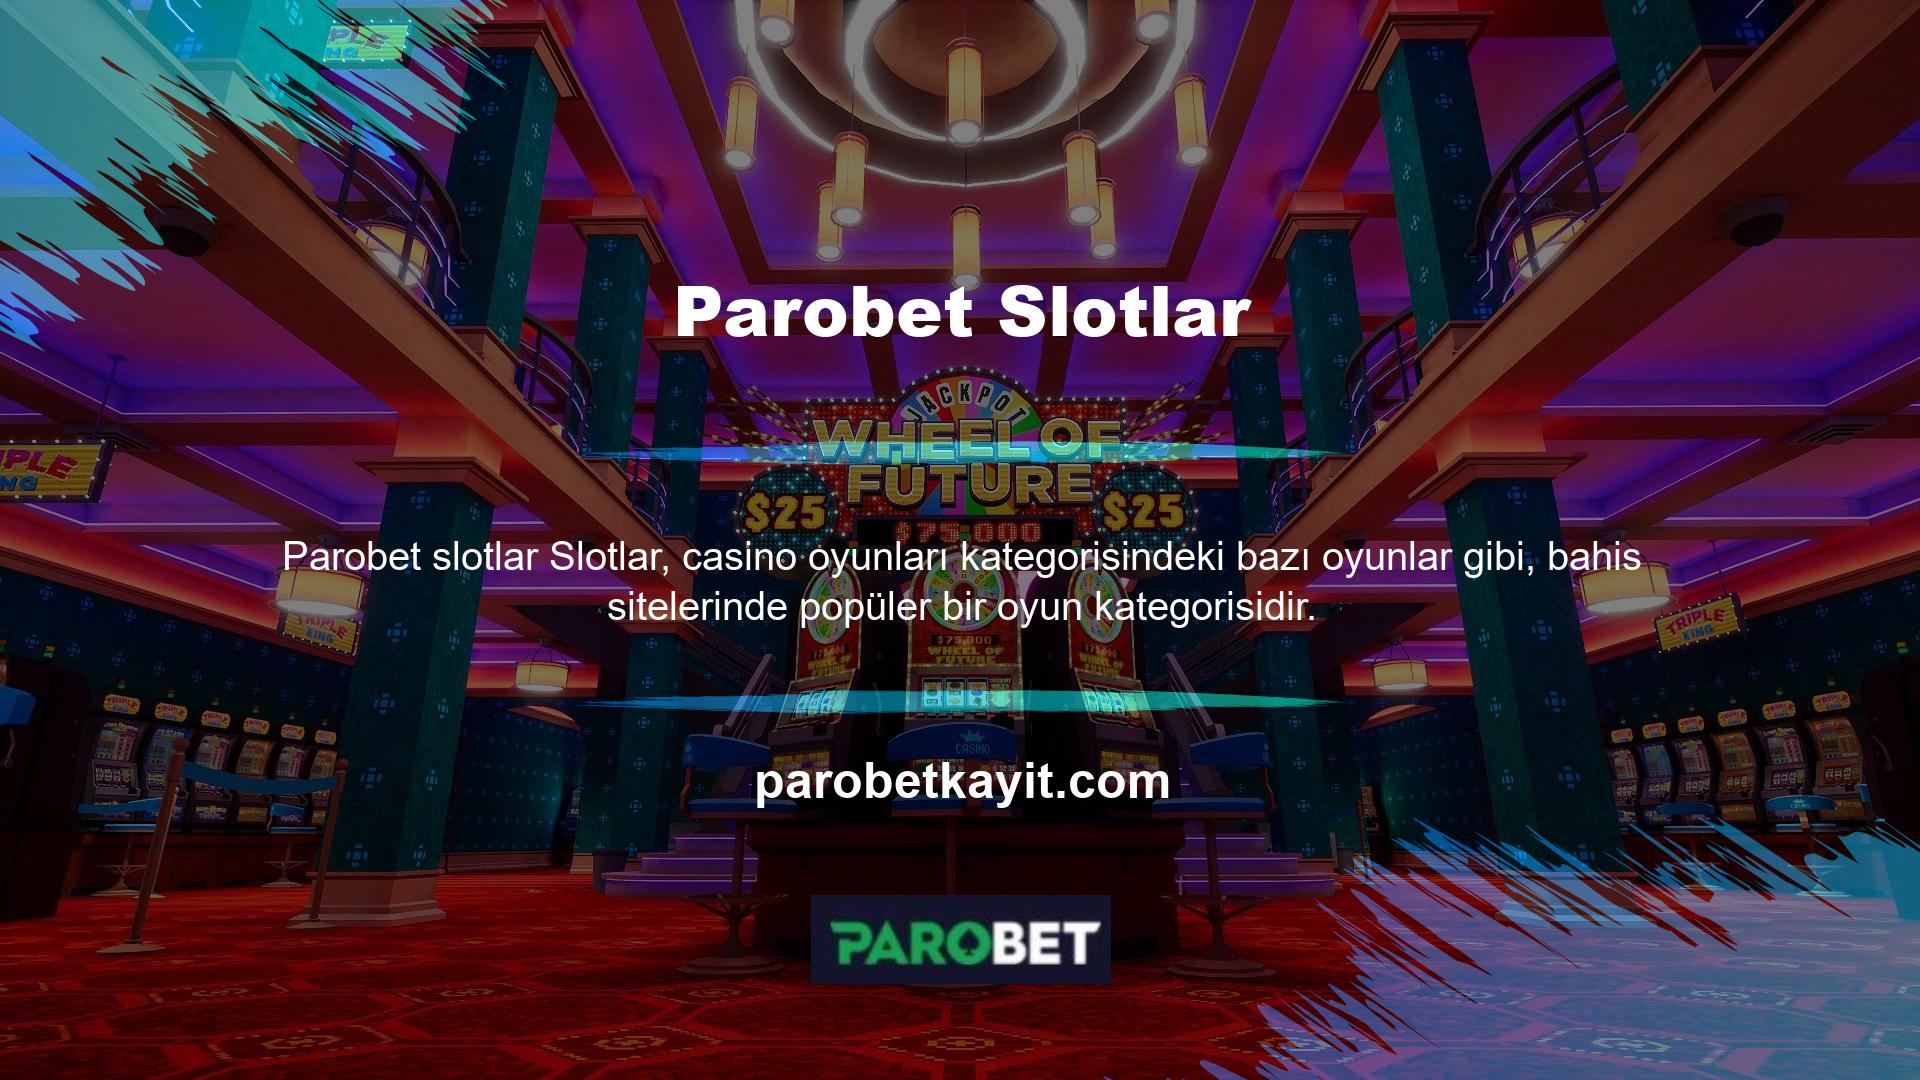 Temelde Parobet Gaming tarafından sunulan tüm oyunlar, kaliteli bir oyun altyapısı tarafından desteklenmektedir